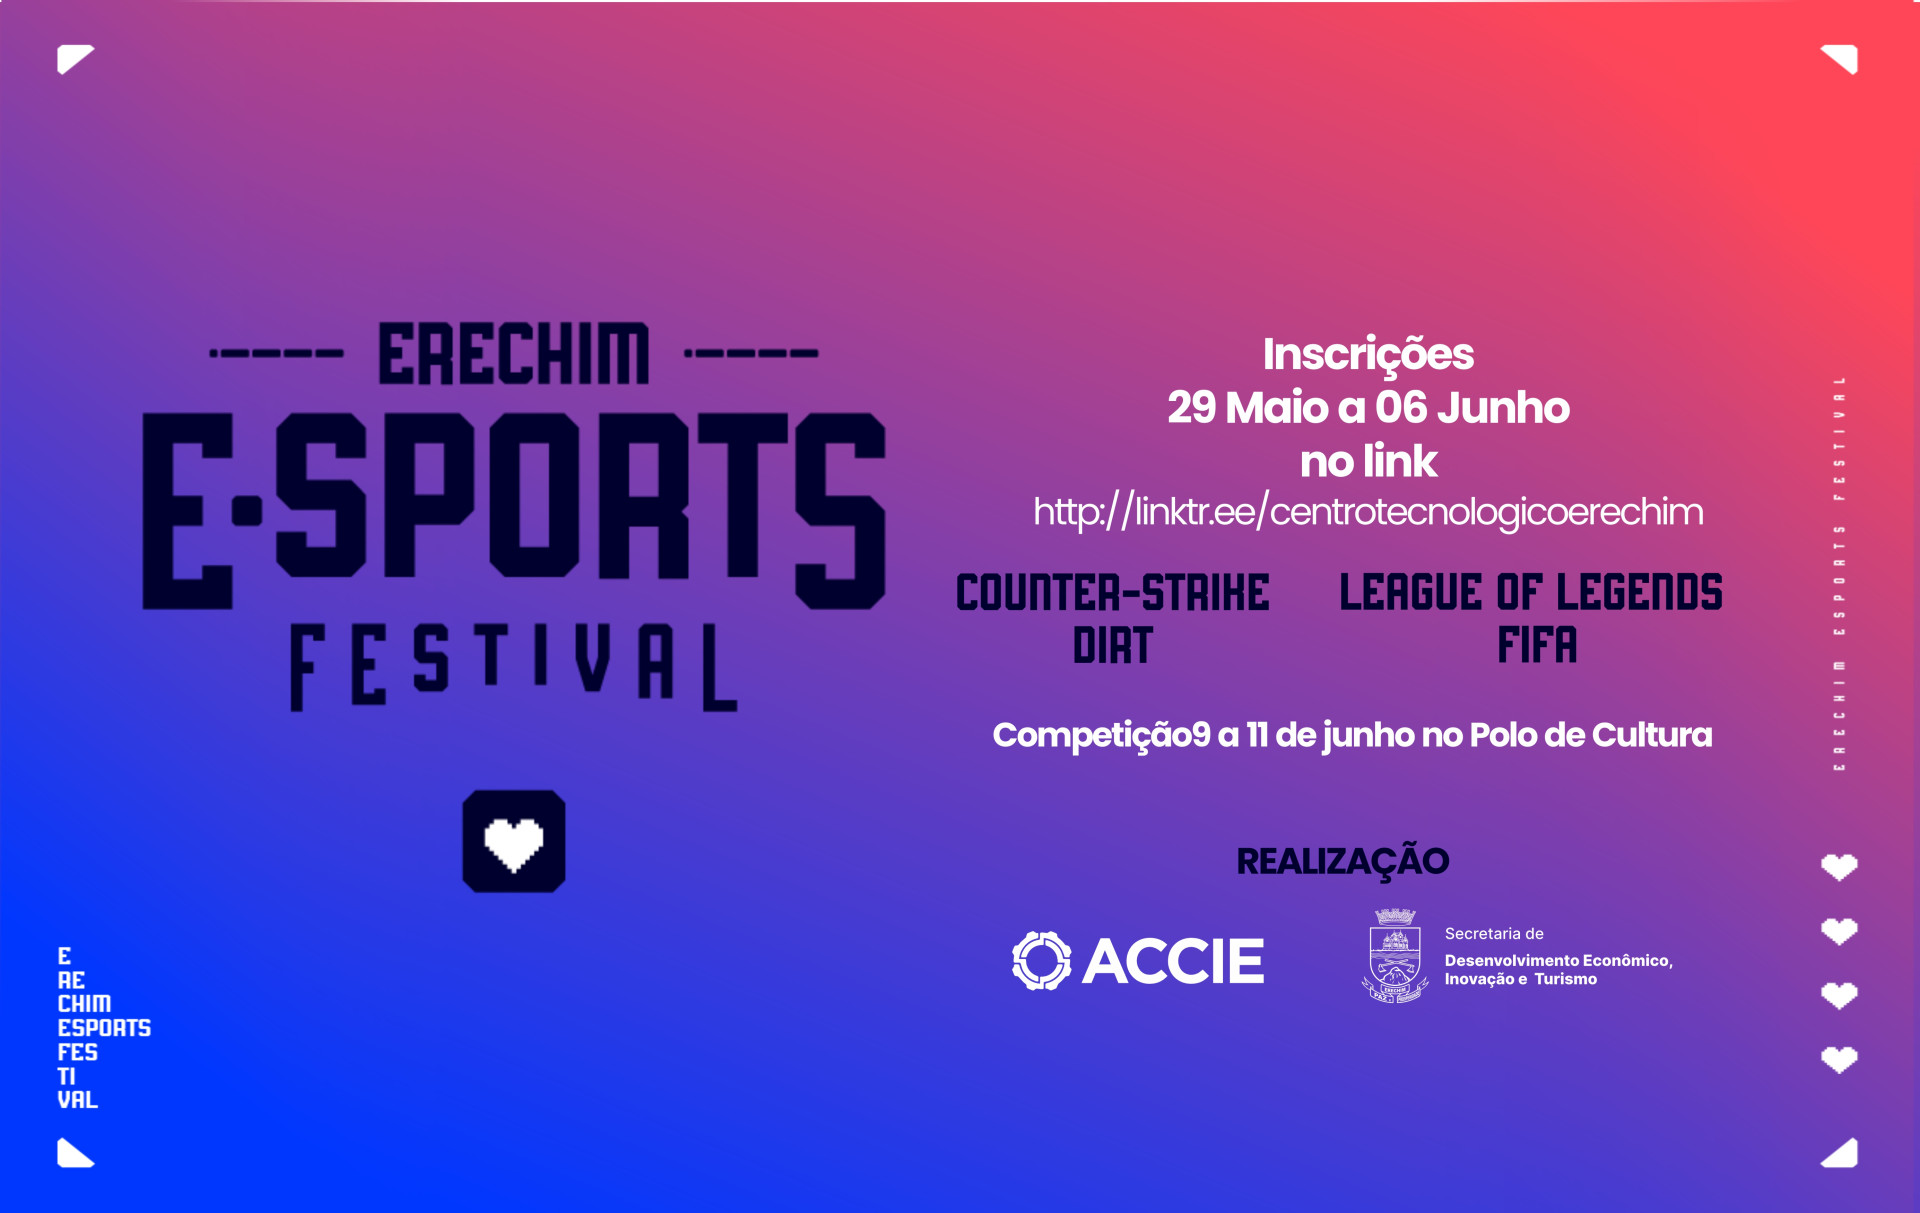  Erechim E-sports Festival